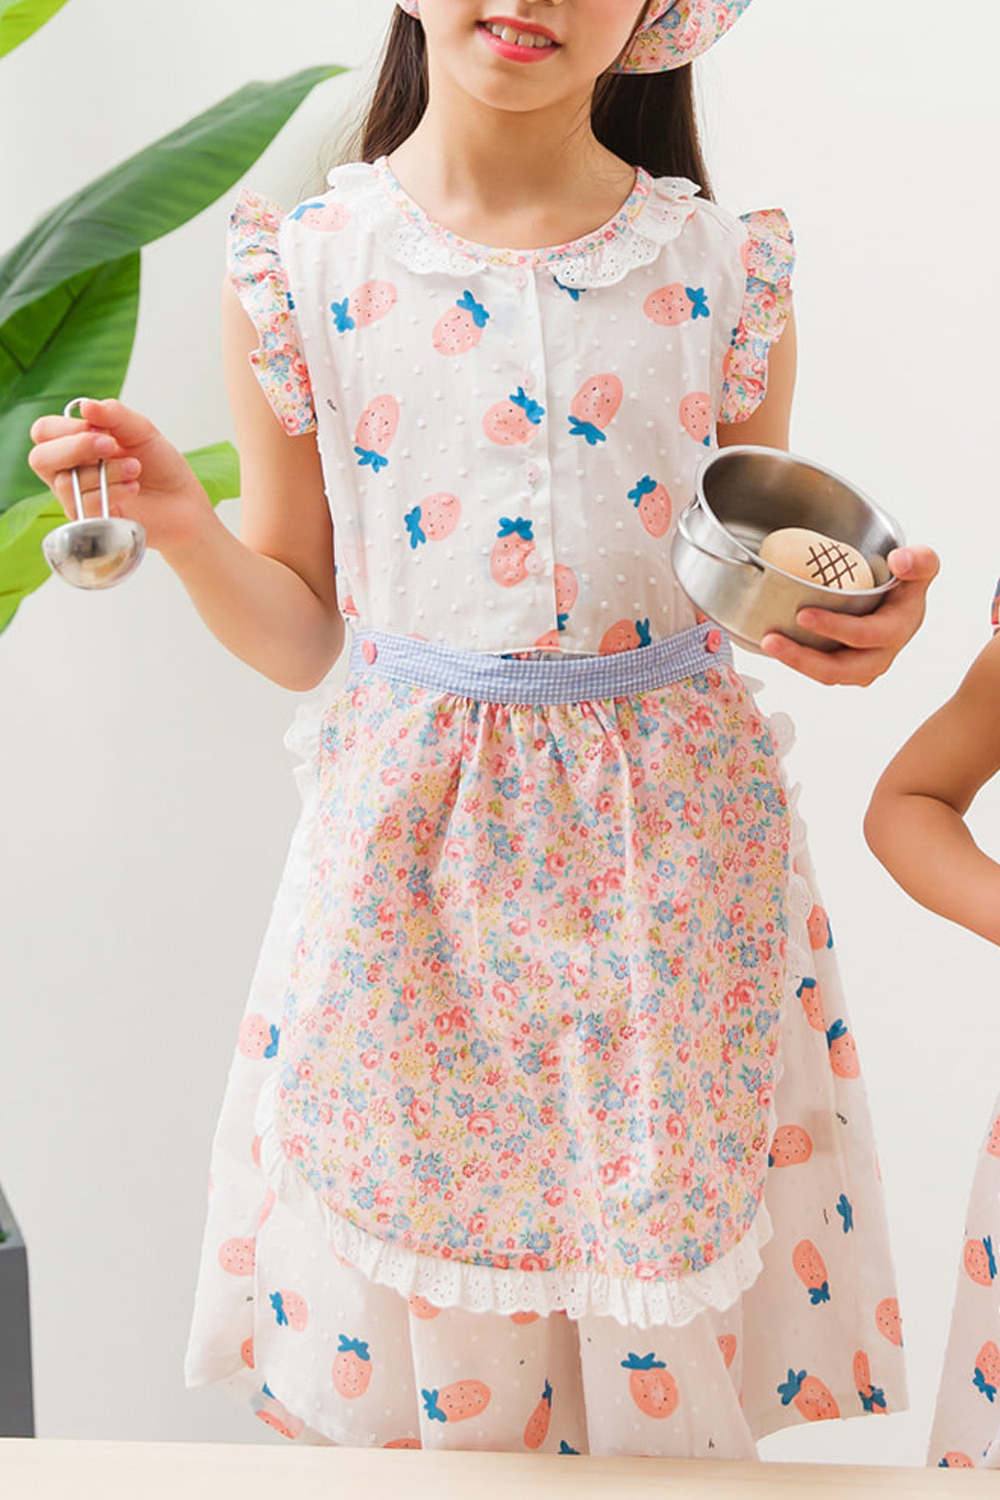 딸기에이프런(원피스+에이프런세트)잠옷, 홈웨어, 아동내복, 아동속옷,성인잠옷,고후나비